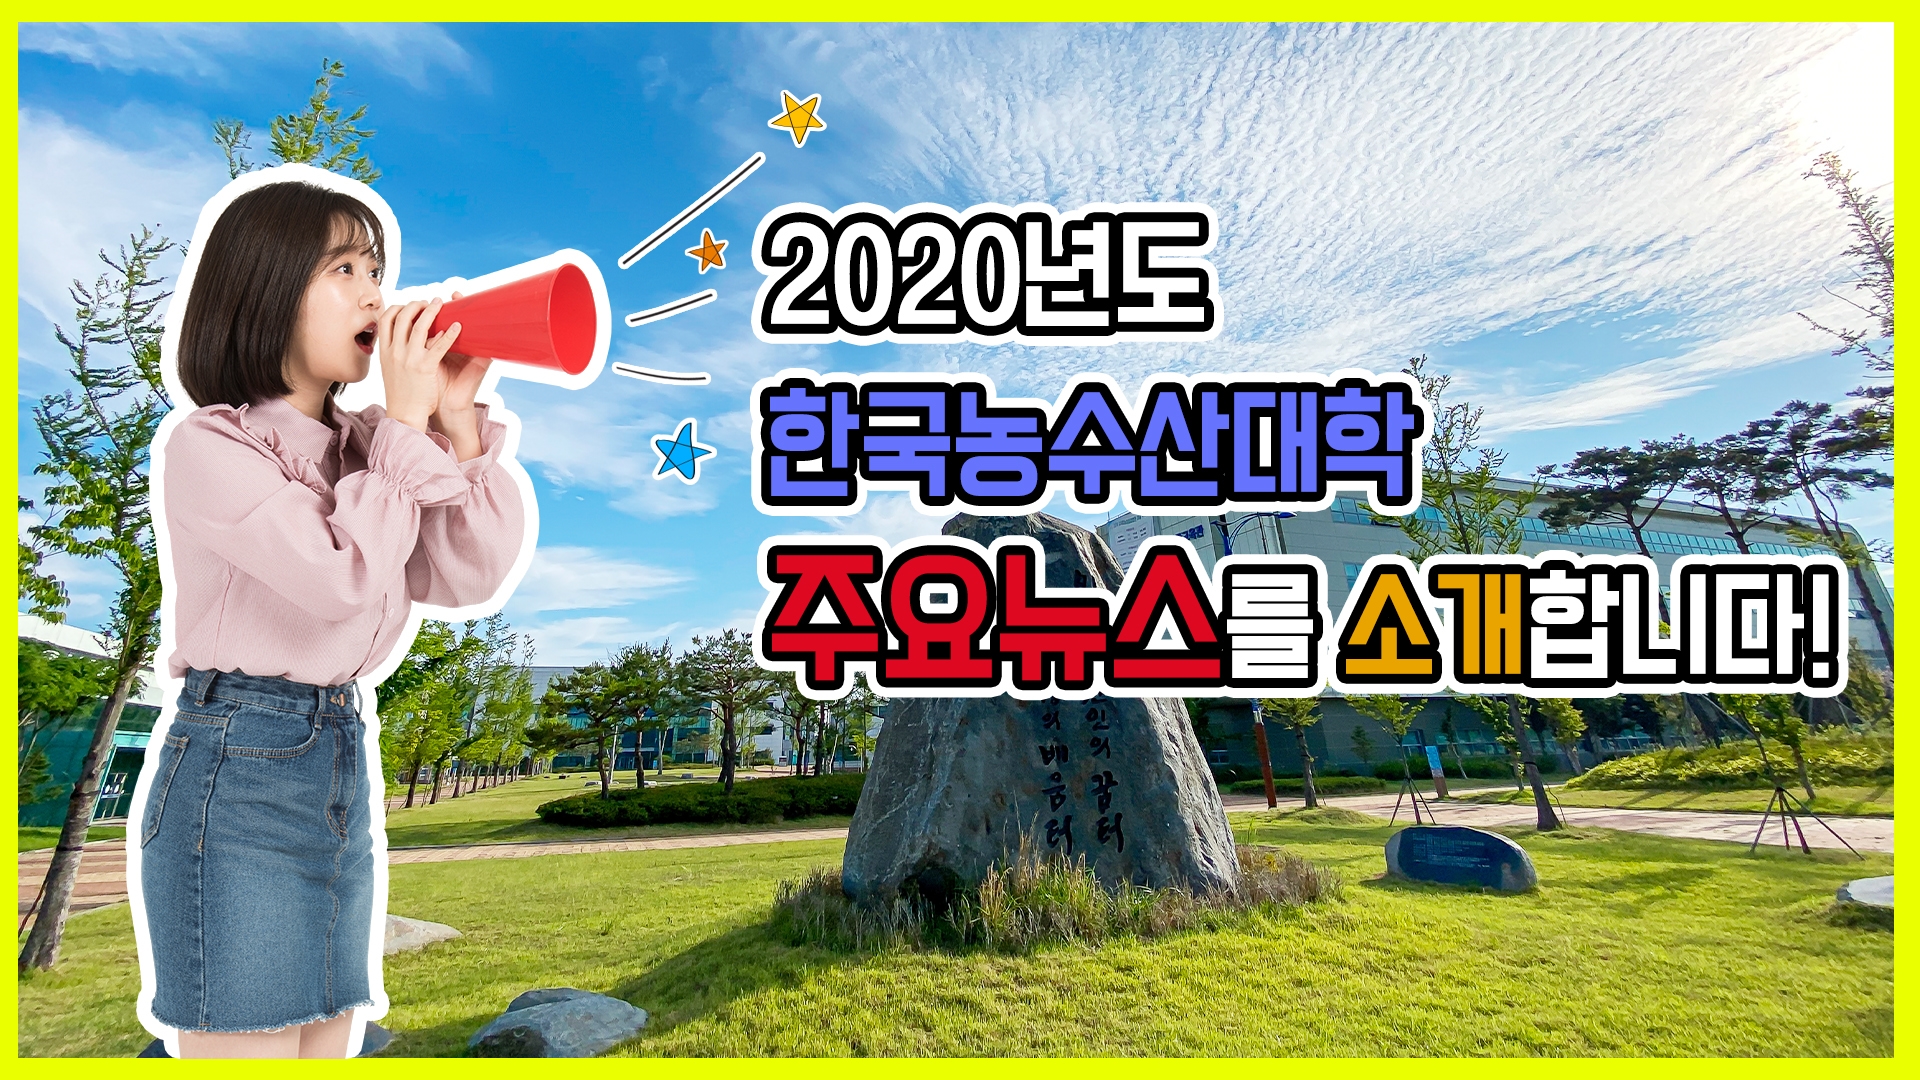 2020년도 한국농수산대학 주요 뉴스를 소개합니다.